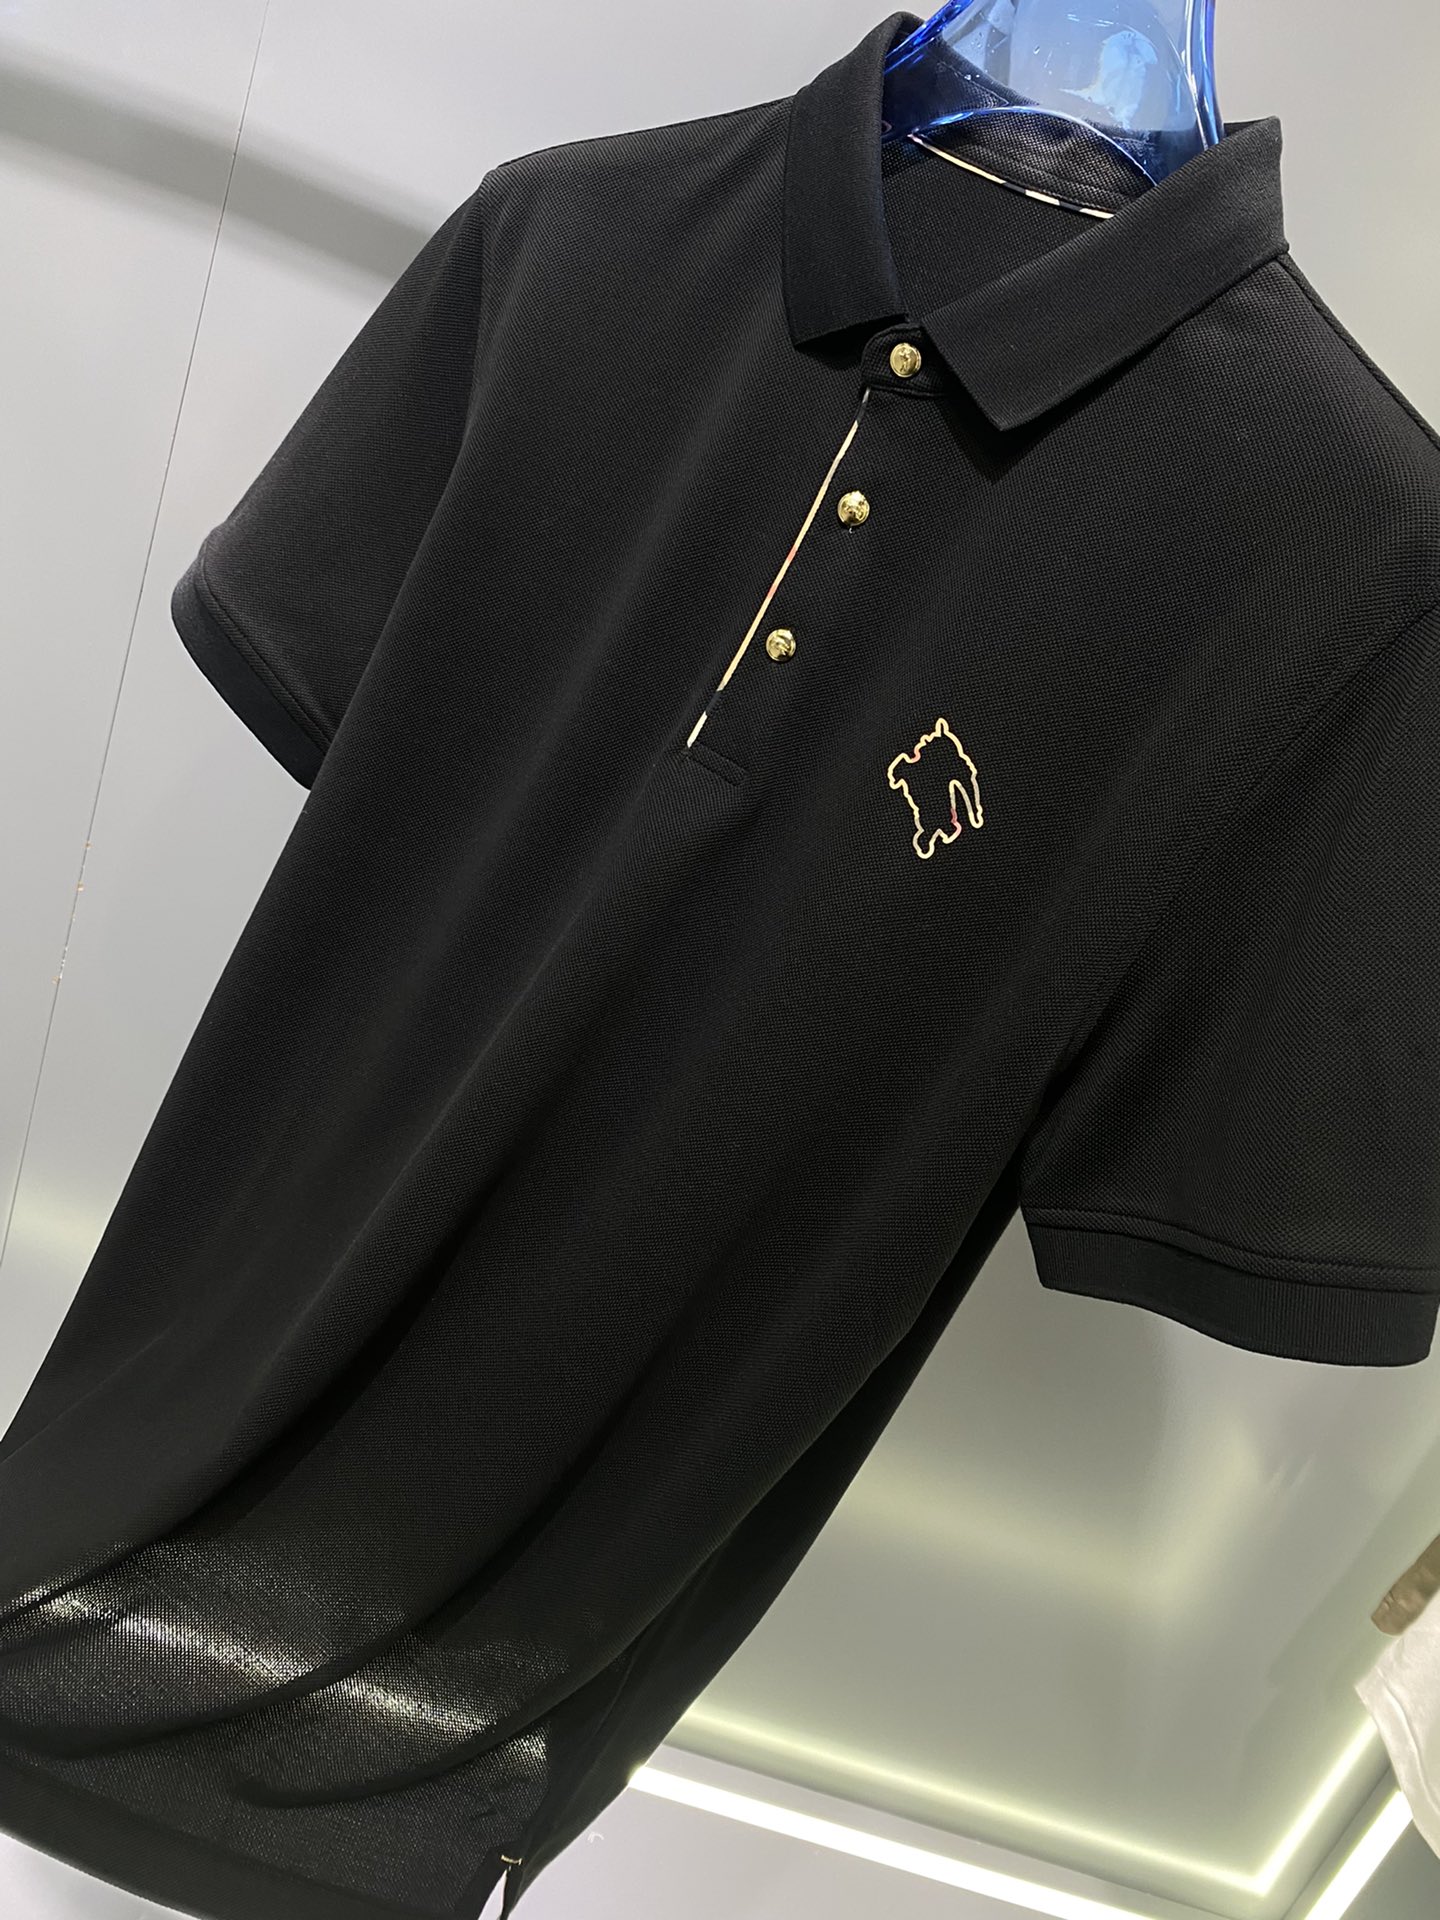 #Bu夏季新款短袖T恤Polo客供定制珠地面料简单时尚款超级好看！简单大方的款式！满满的高级感四季可穿颜